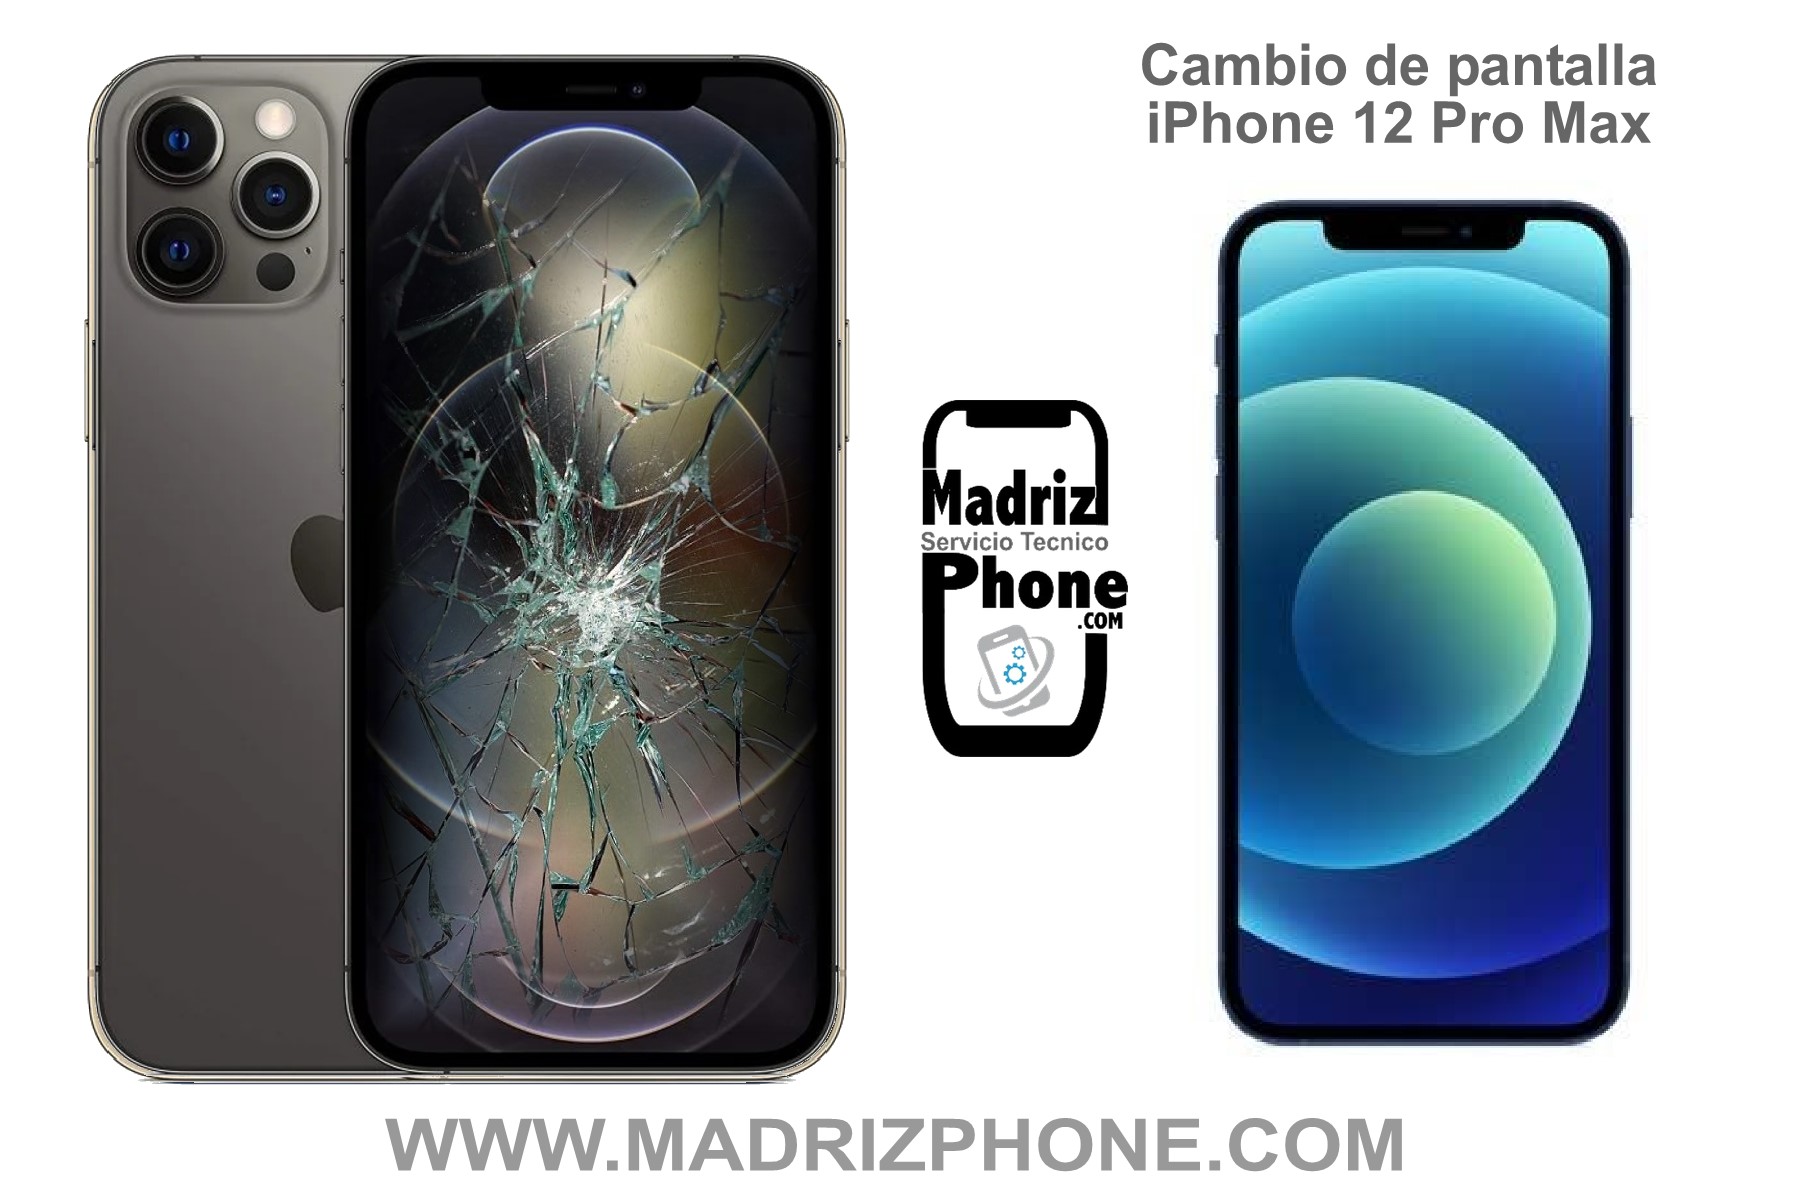 REPARAR en el ACTO Apple iPhone 12 Pro Max en MADRID 110€ Garantía -  Servicio Tecnico Reparacion y Liberacion de Mòviles,tablet en Madrid,  Cambio de pantallas en 1 hora, accesorios,venta de moviles